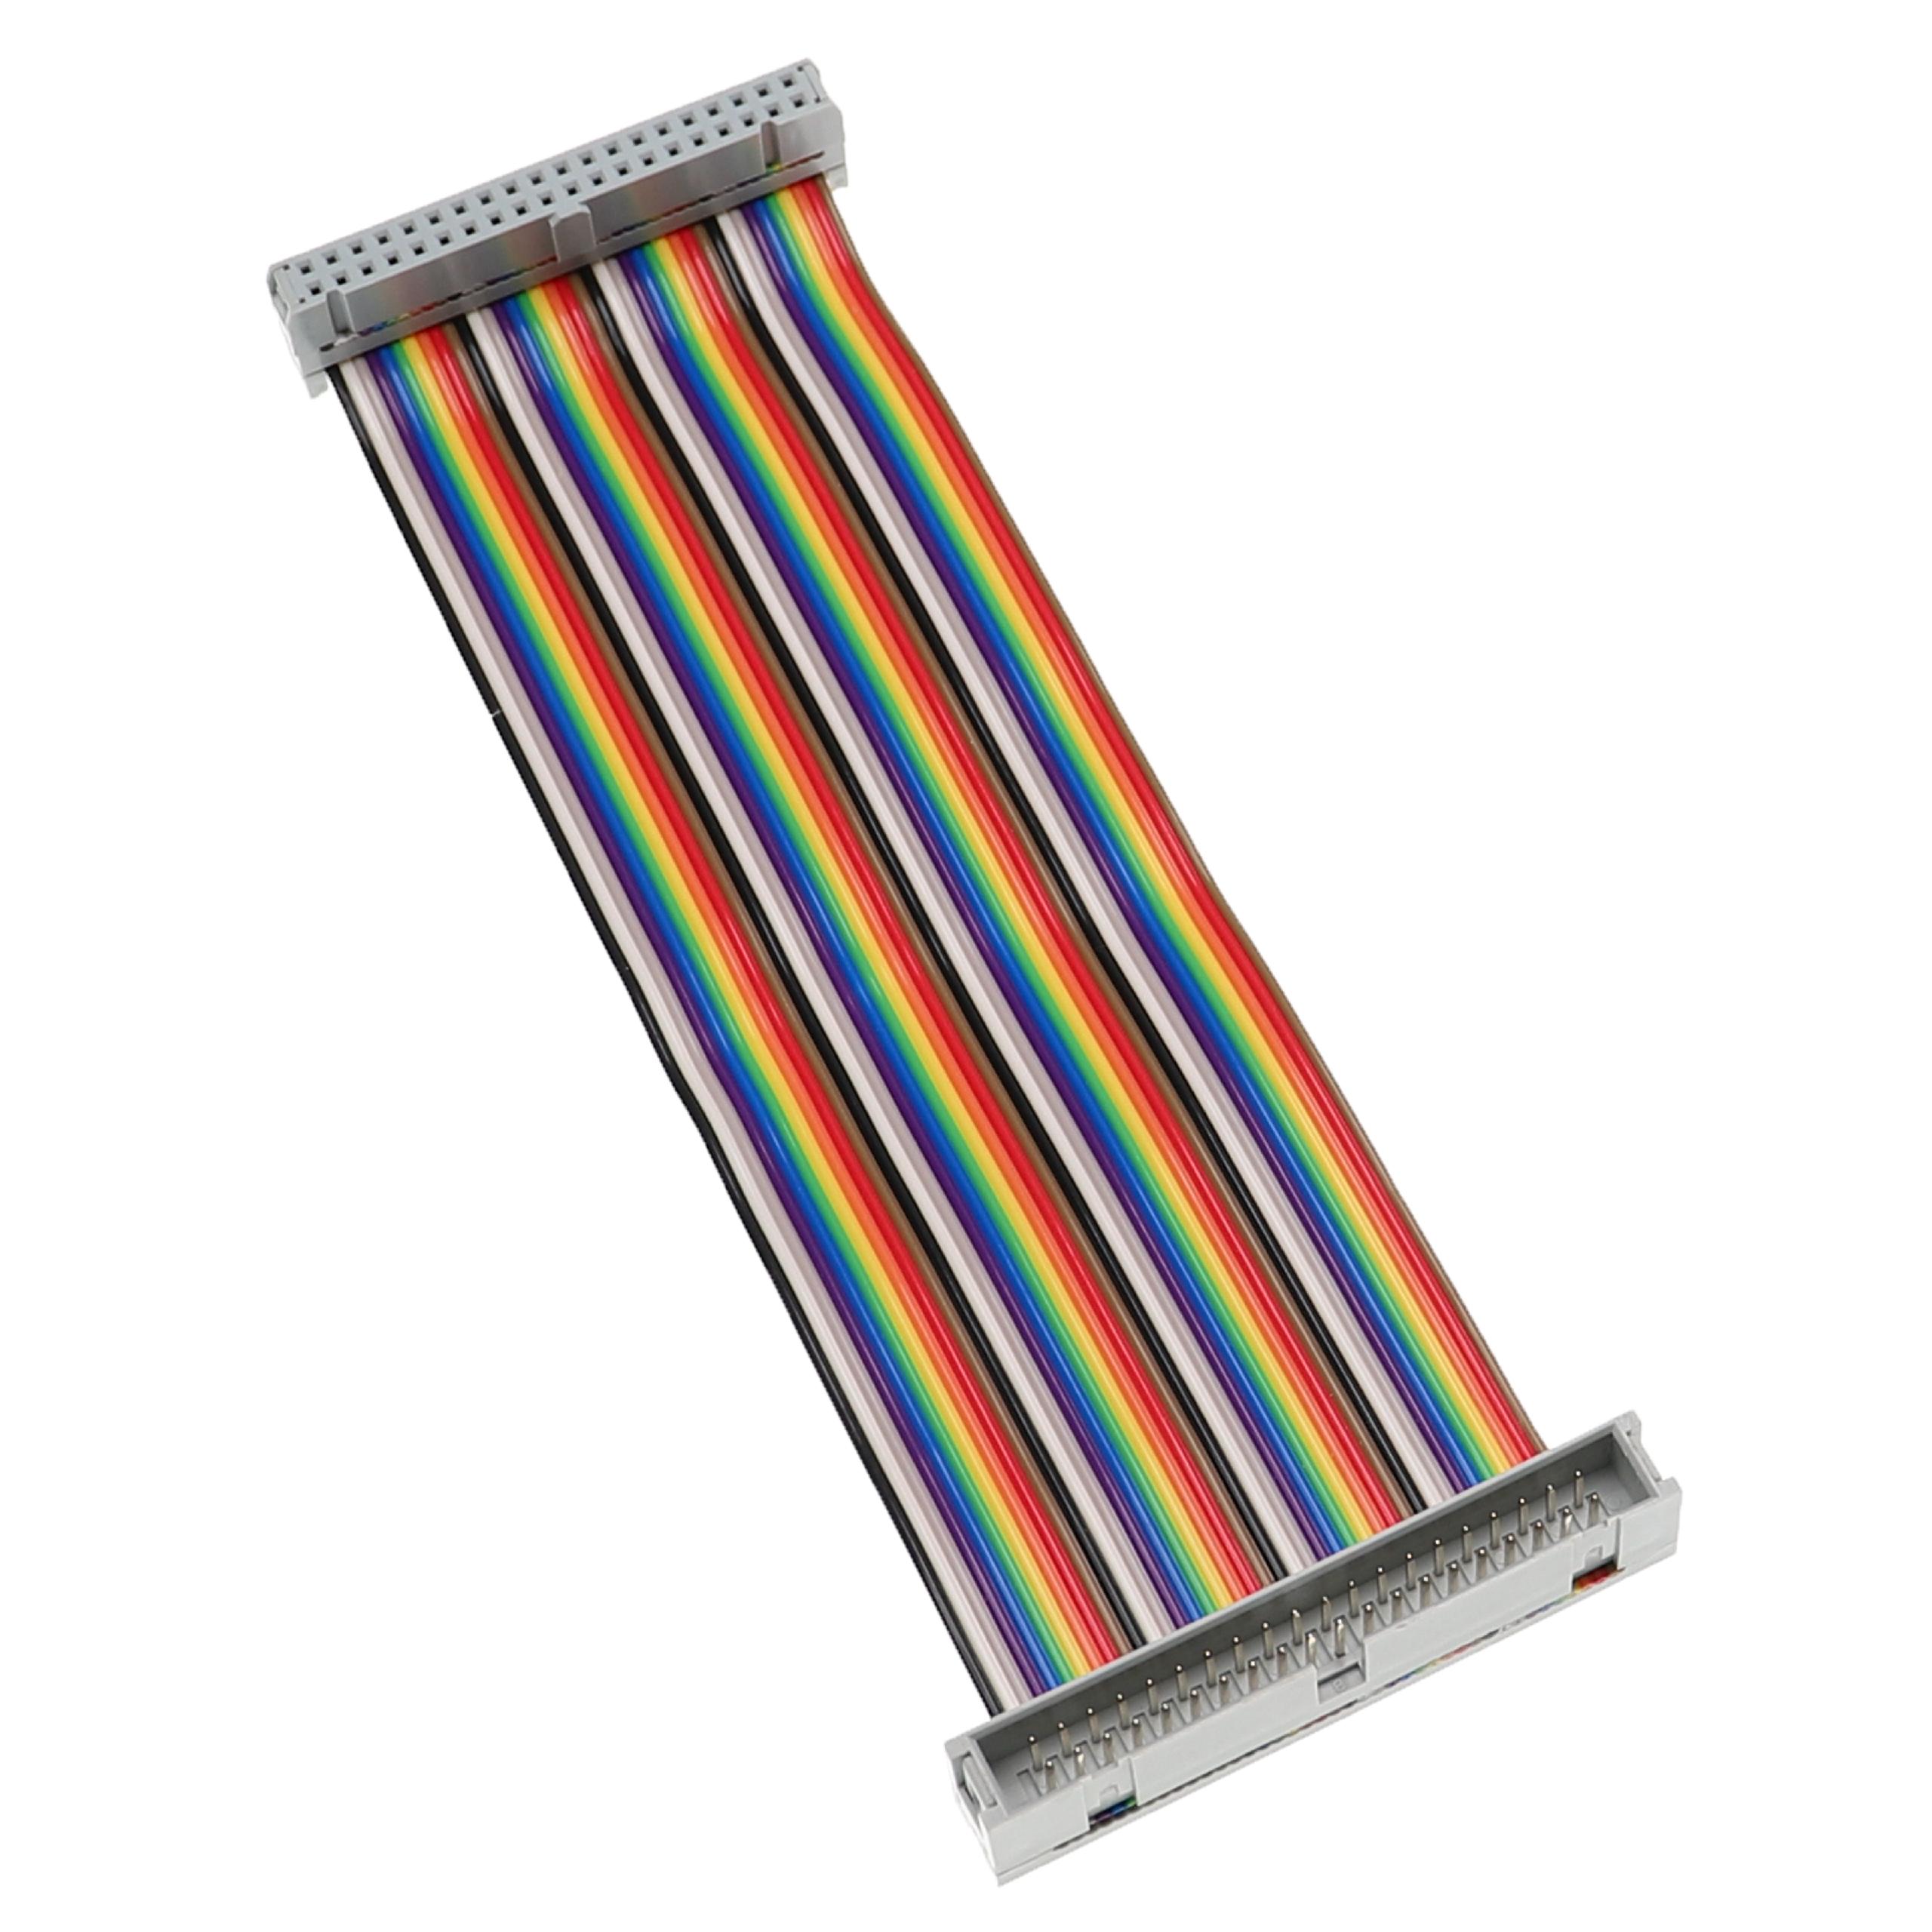 GPIO Kabel 40 Pin passend für Raspberry Pi - GPIO Verlängerung Mehrfarbig, 15 cm